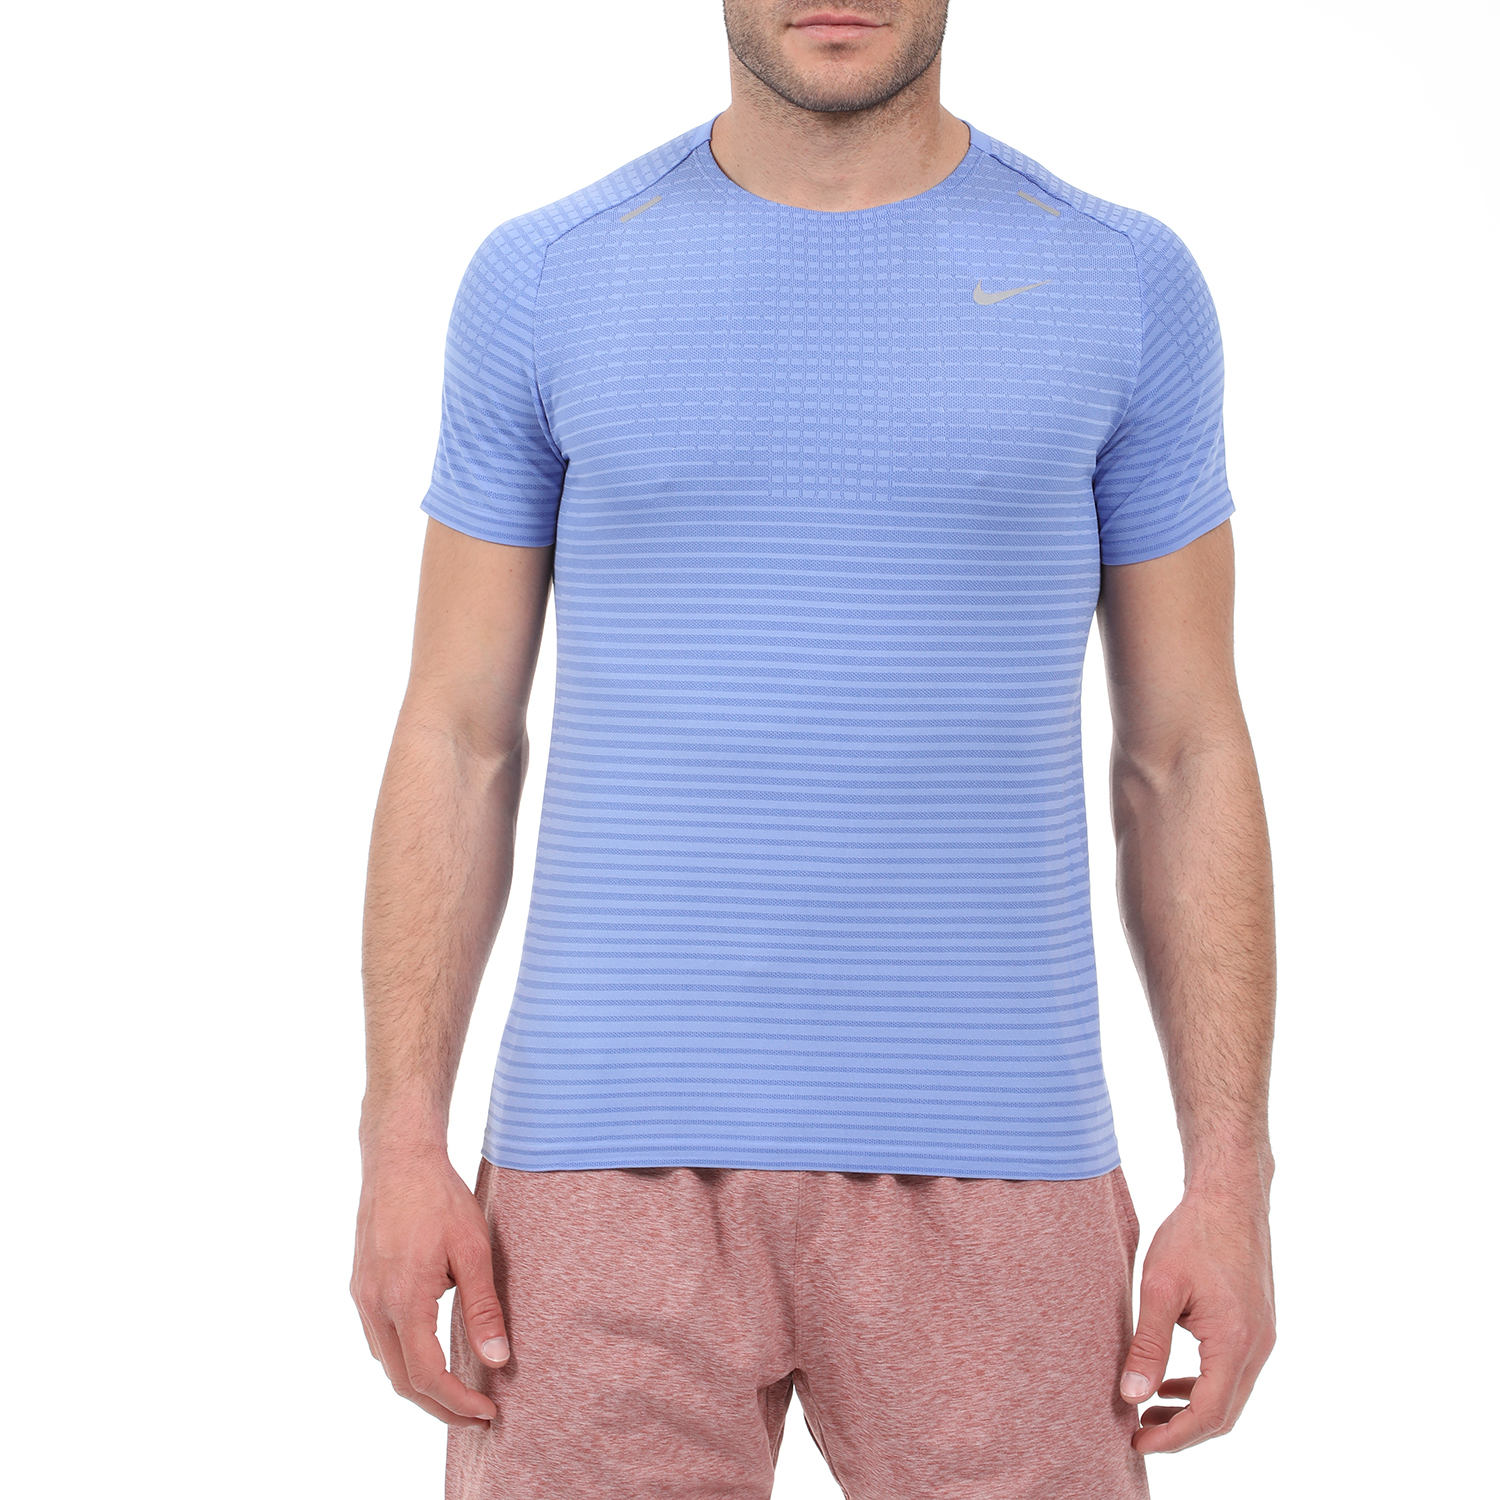 Ανδρικά/Ρούχα/Αθλητικά/T-shirt NIKE - Ανδρική μπλούζα NIKE TECHKNIT ULTRA SS μπλε ασημί